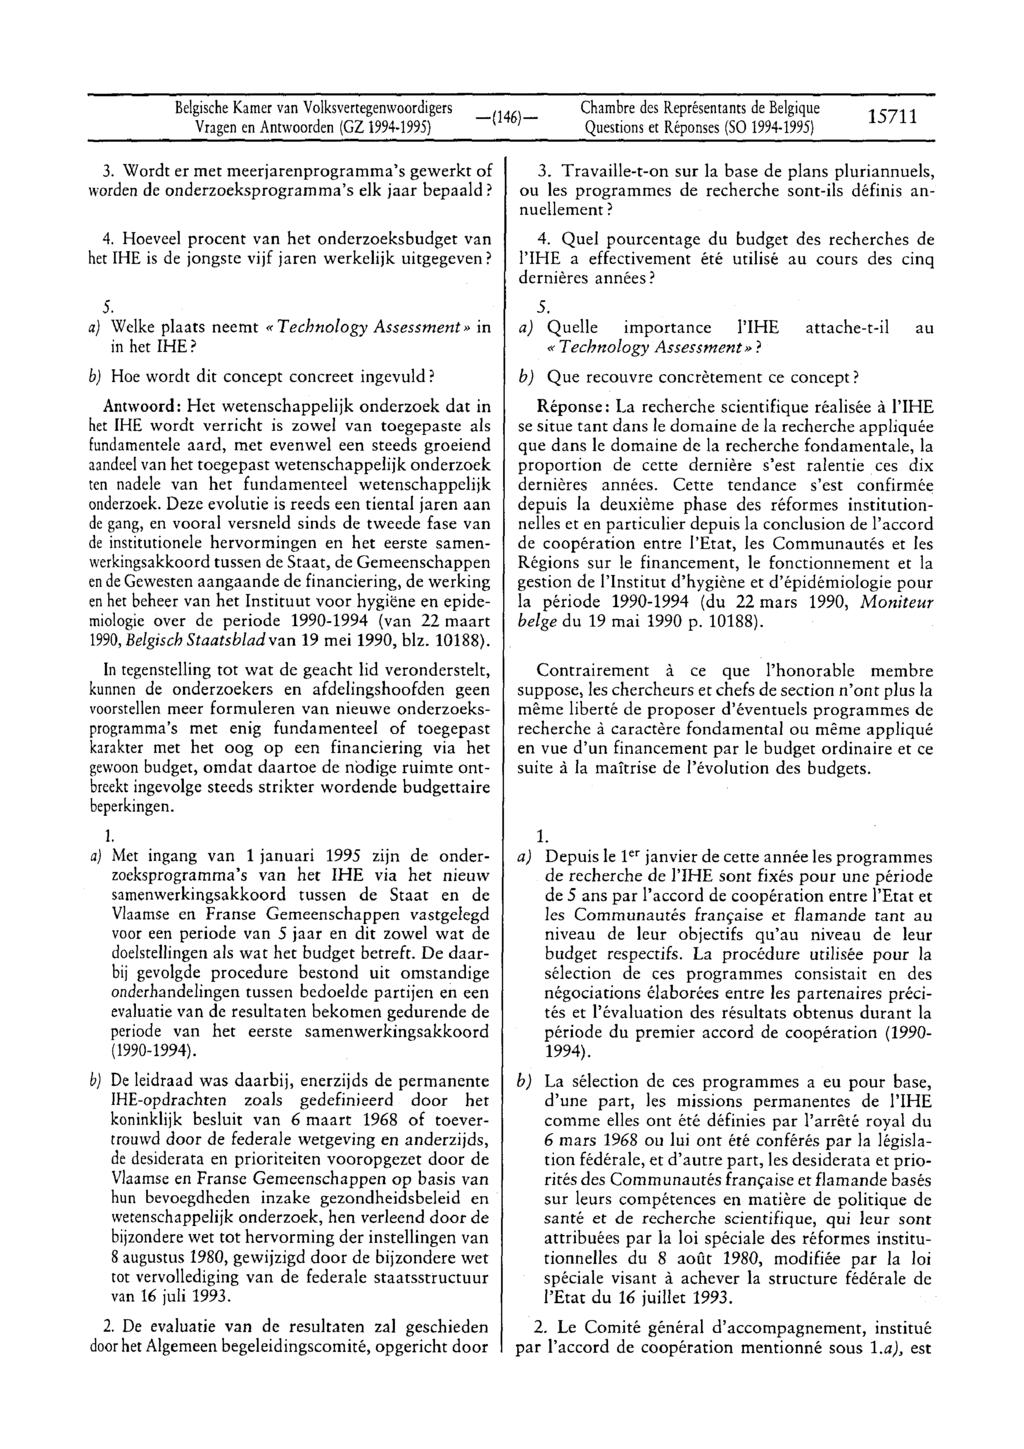 BelgischeKamervan Volksvertegenwoordigers Vragenen Antwoorden (GZ 1994-1995) Questionset Réponses(SO 1994-1995) 15711 3.